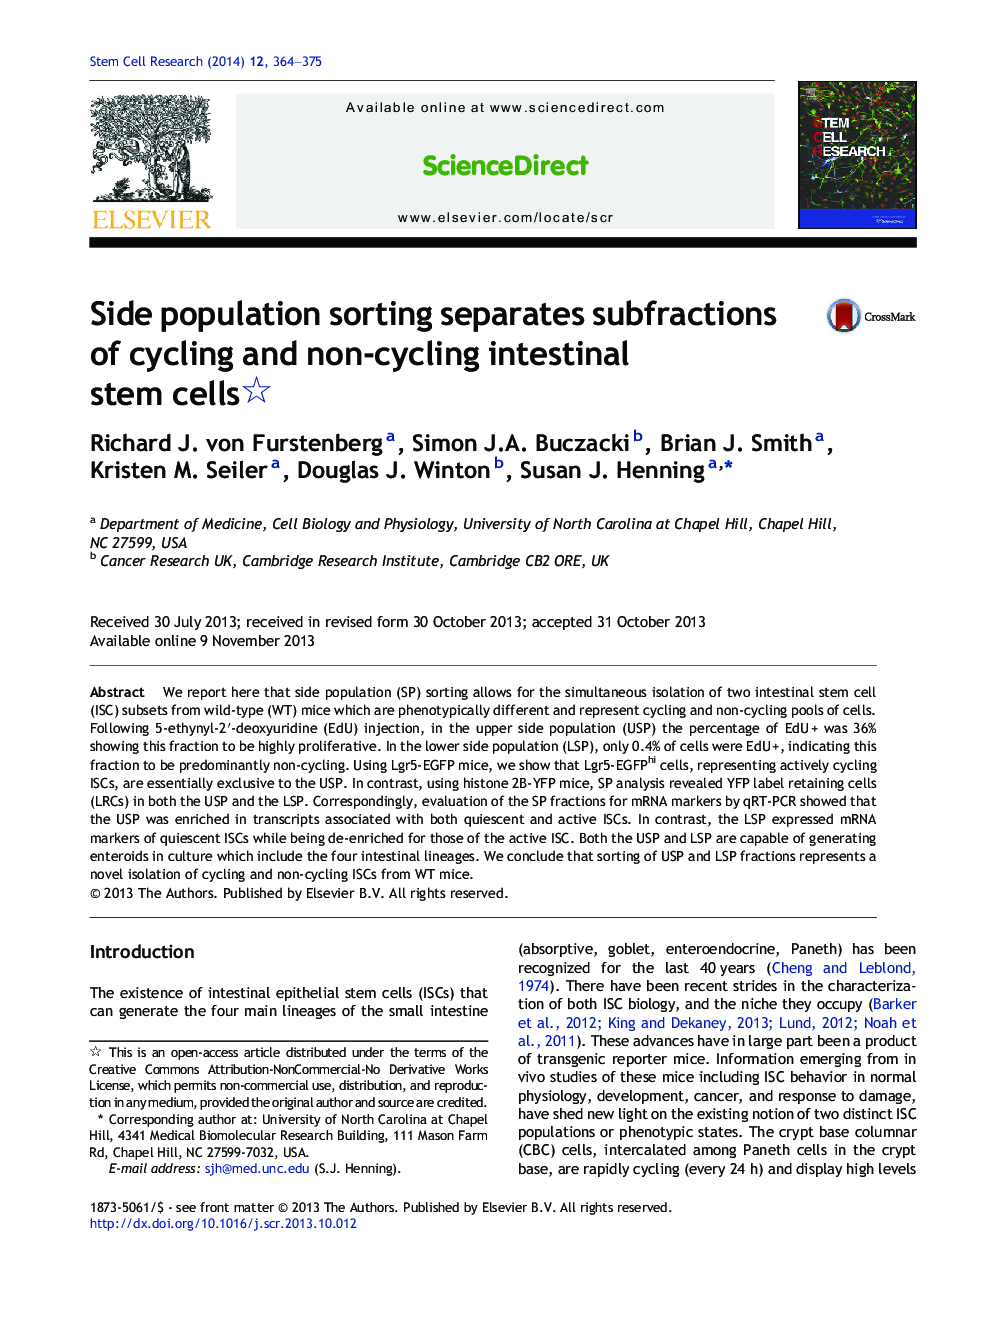 مرتب سازی جمعیت جانبی، زیر فرایندهای سلول های بنیادی روده ای دوچرخه سواری و غیر دوچرخه ای را جدا می کند؟ 